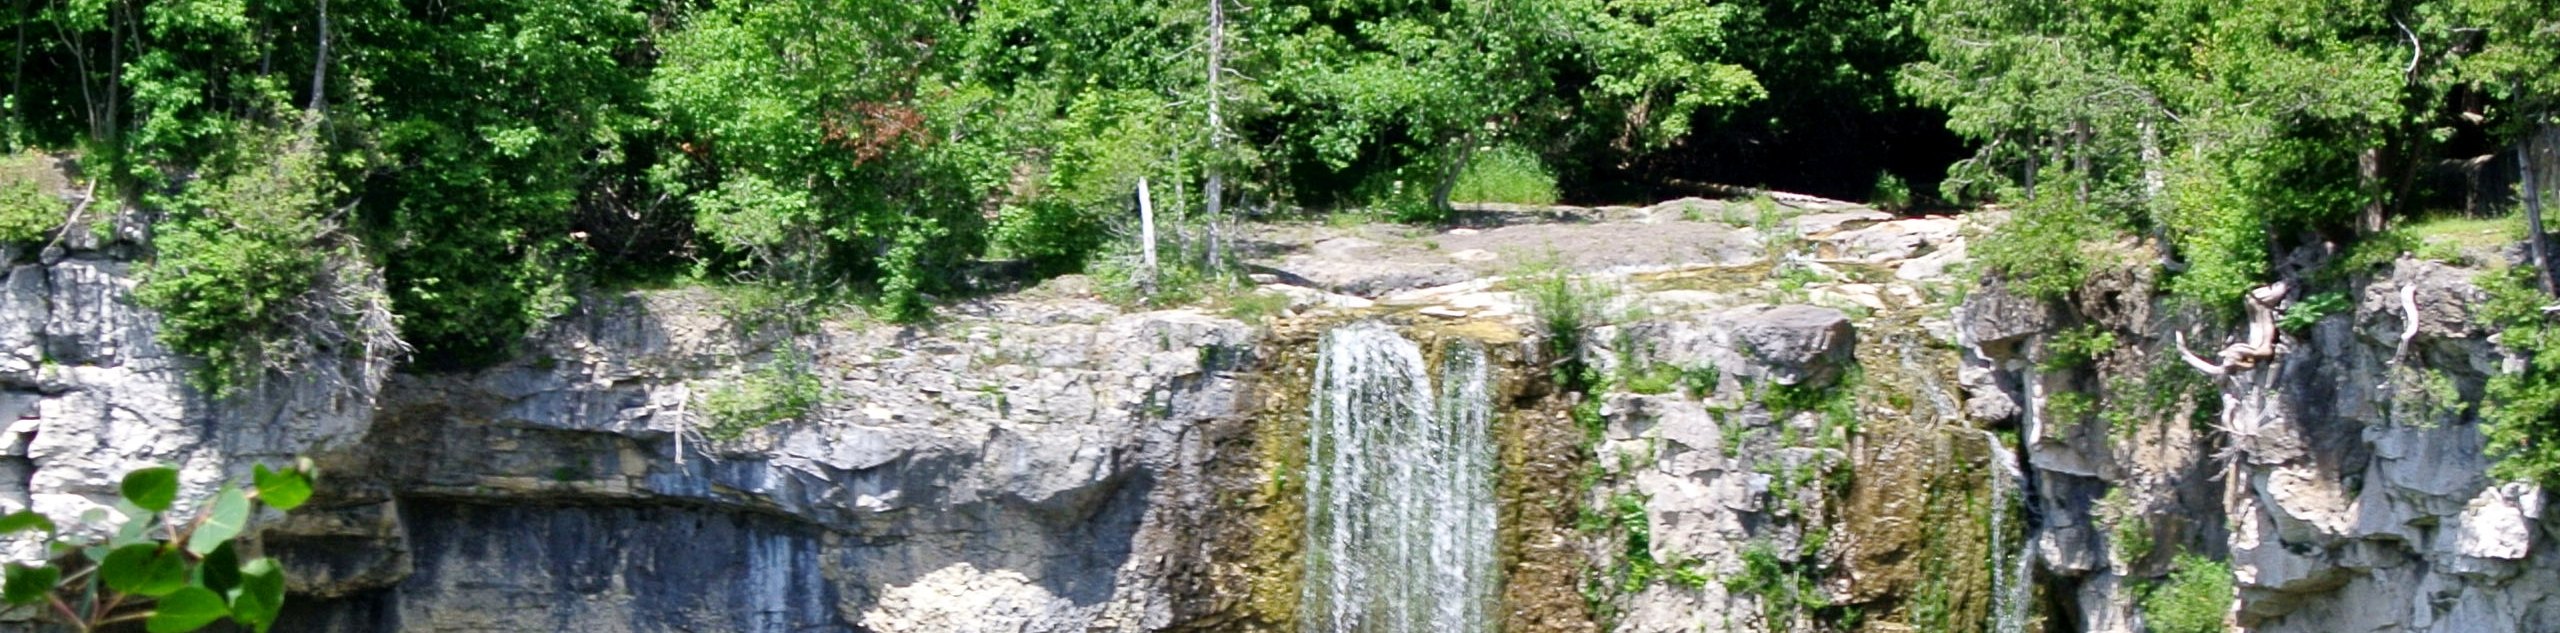 Eugenia Falls and Hoggs Falls Loop Hike